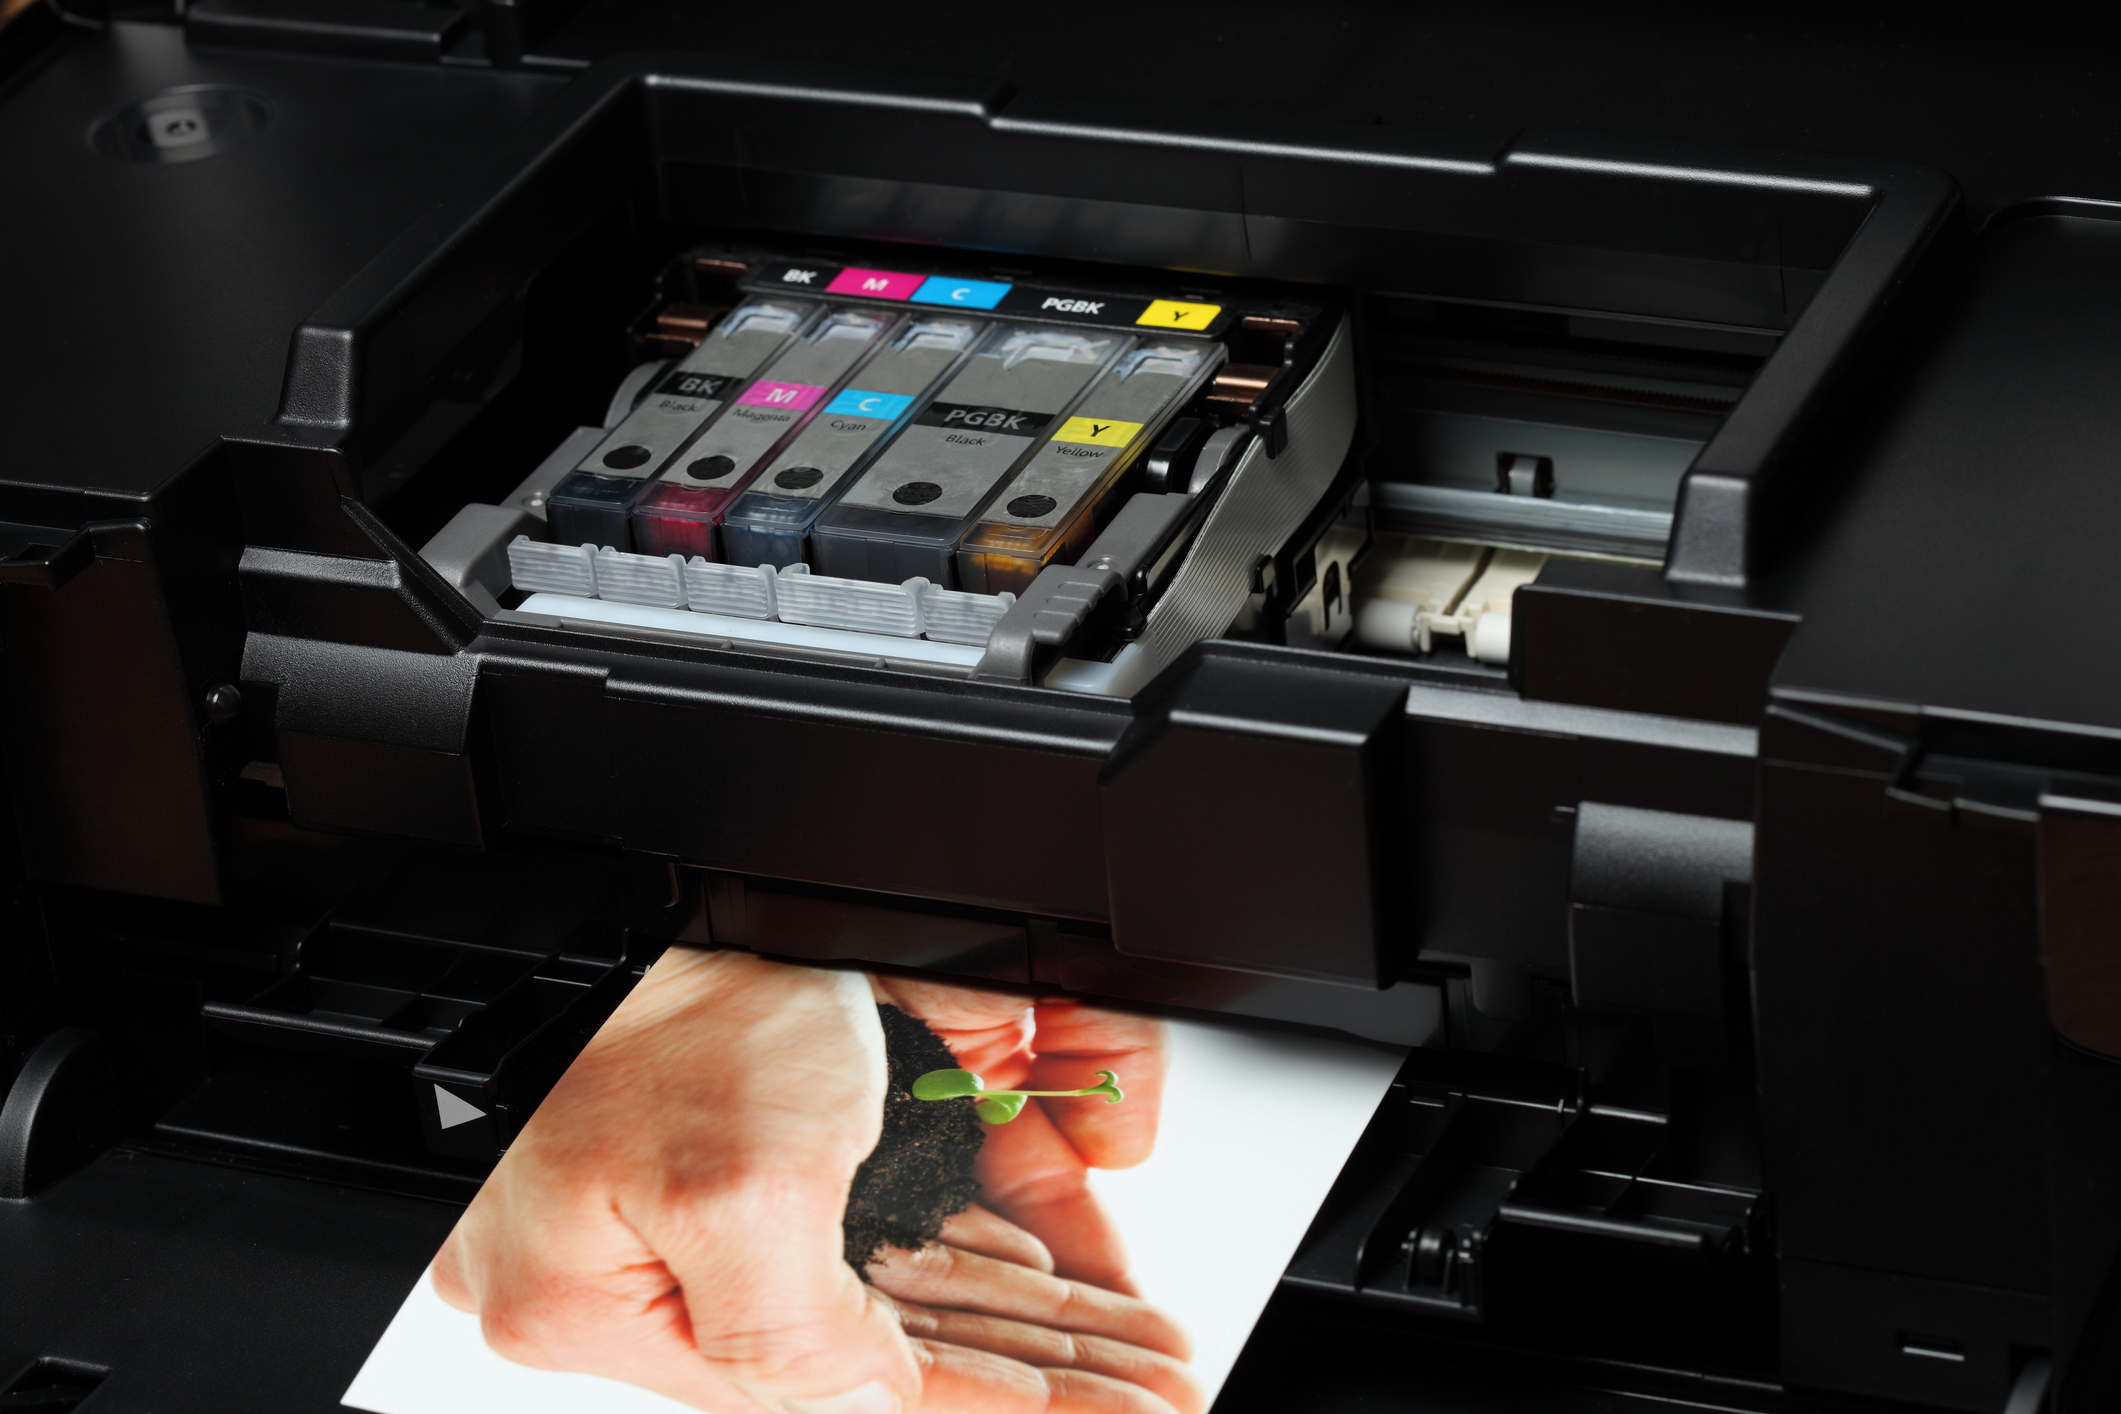 Drucker ausschalten und Netzstecker ziehen.
Druckerabdeckung öffnen und Tinten- oder Tonerpatronen überprüfen.